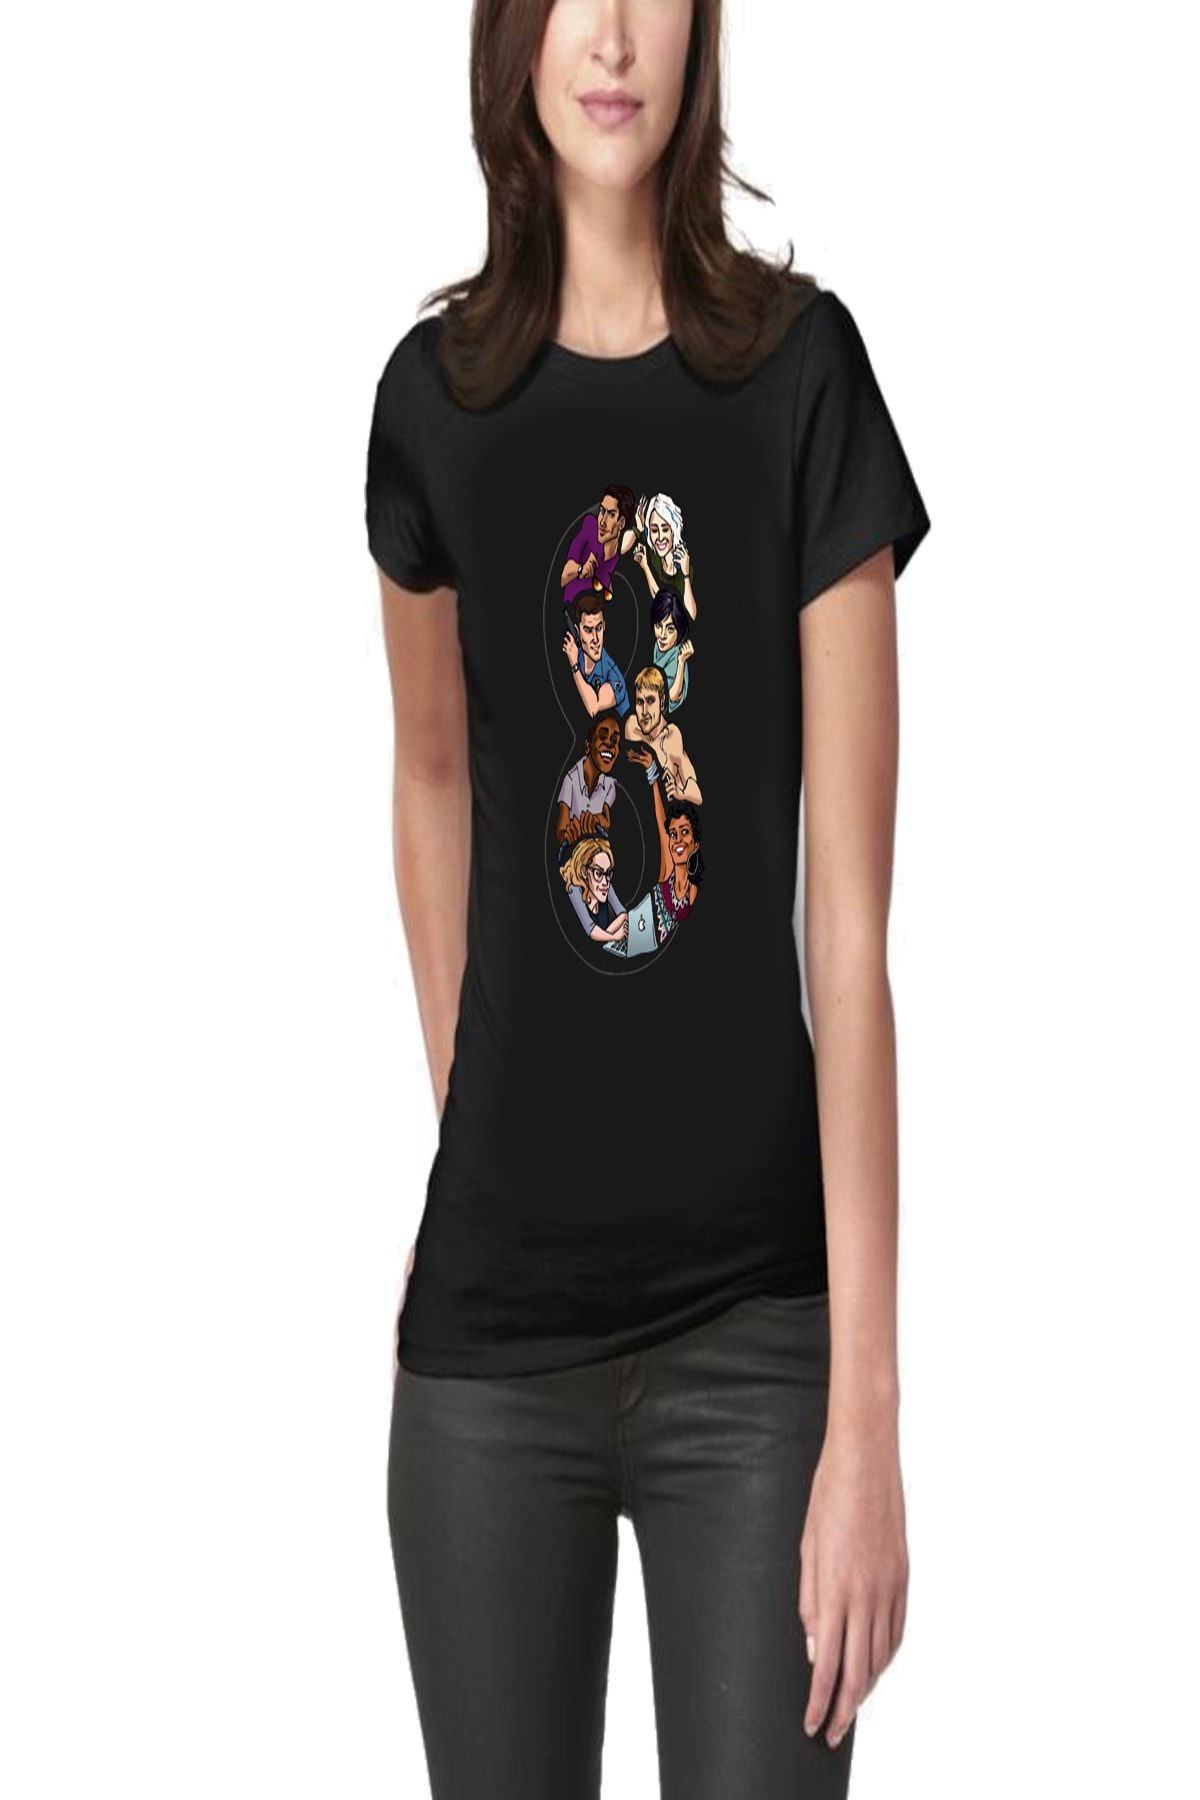 Art T-Shirt Kadın Sense8 Baskılı Tasarım Tişört